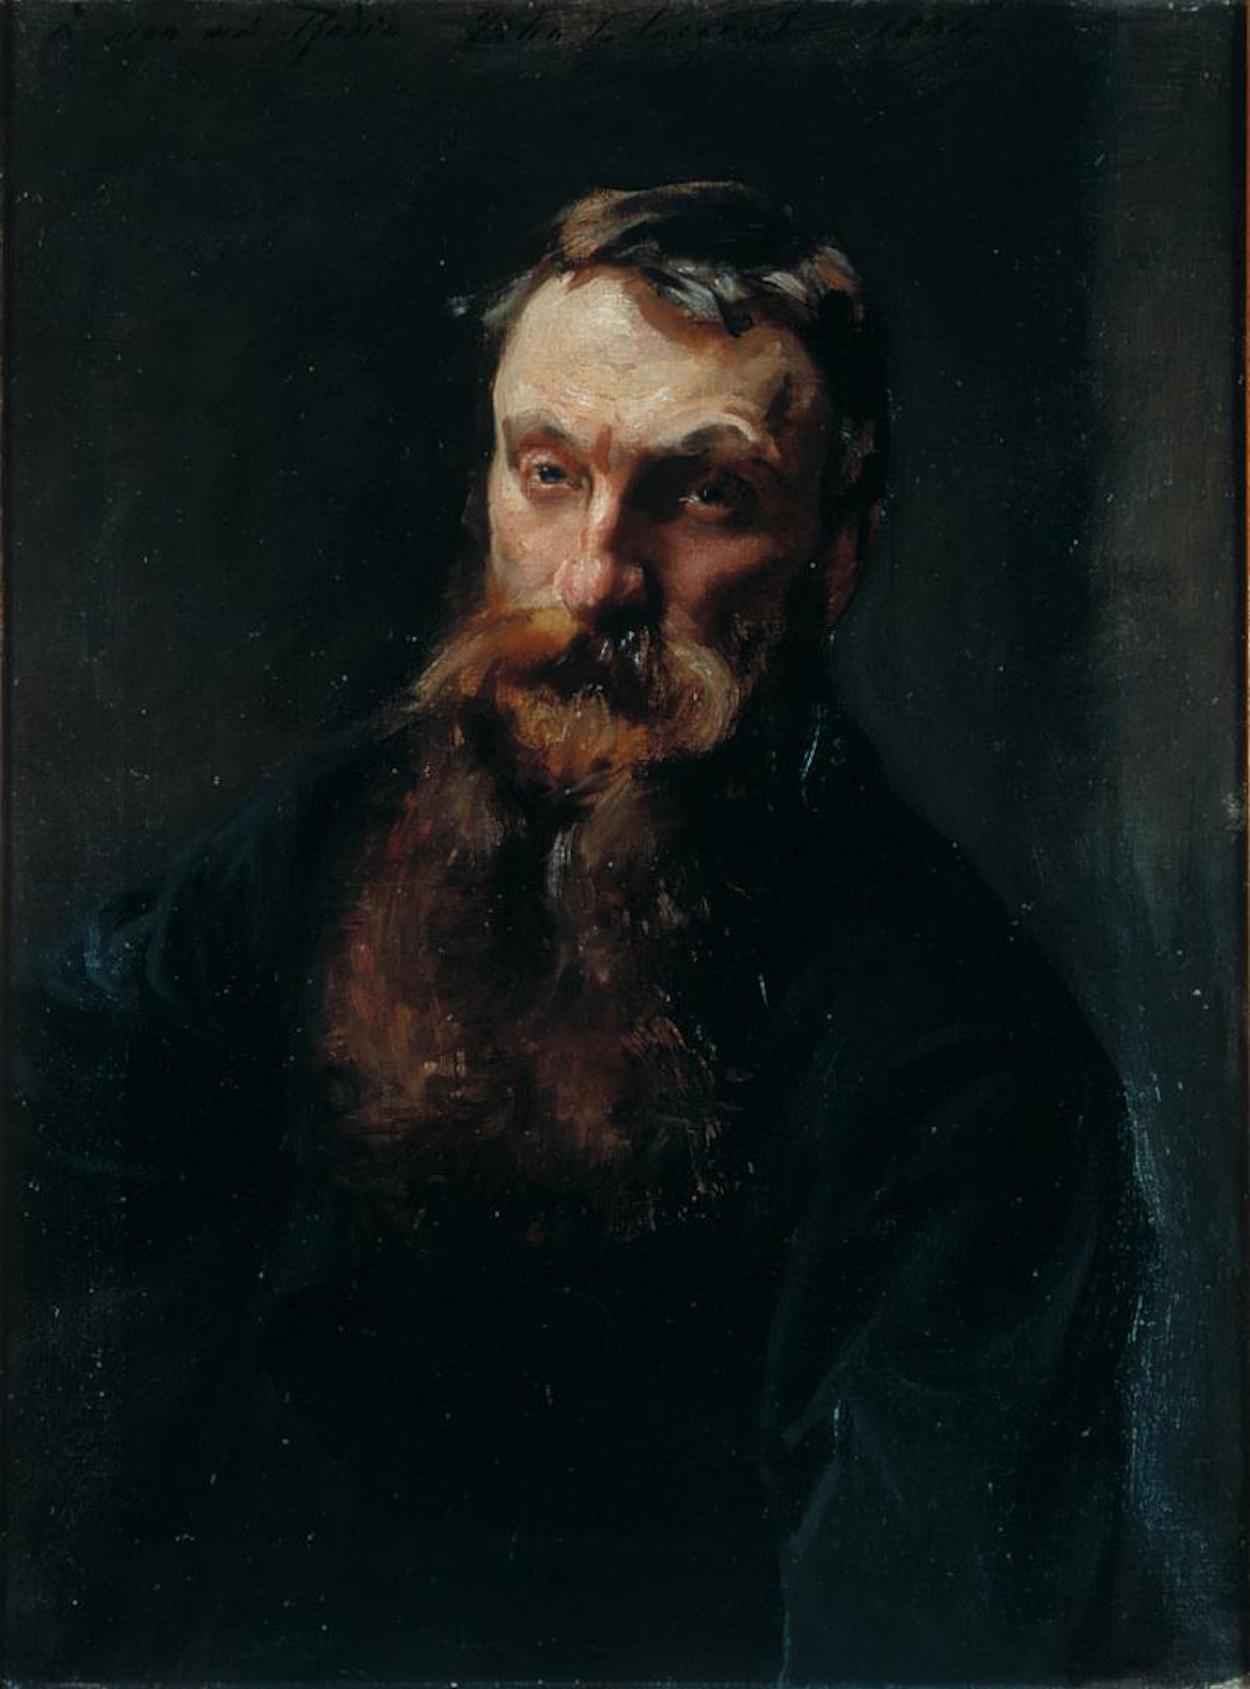 Portrait of Rodin by John Singer Sargent - 1884 - 72 x 53 cm Musée Rodin